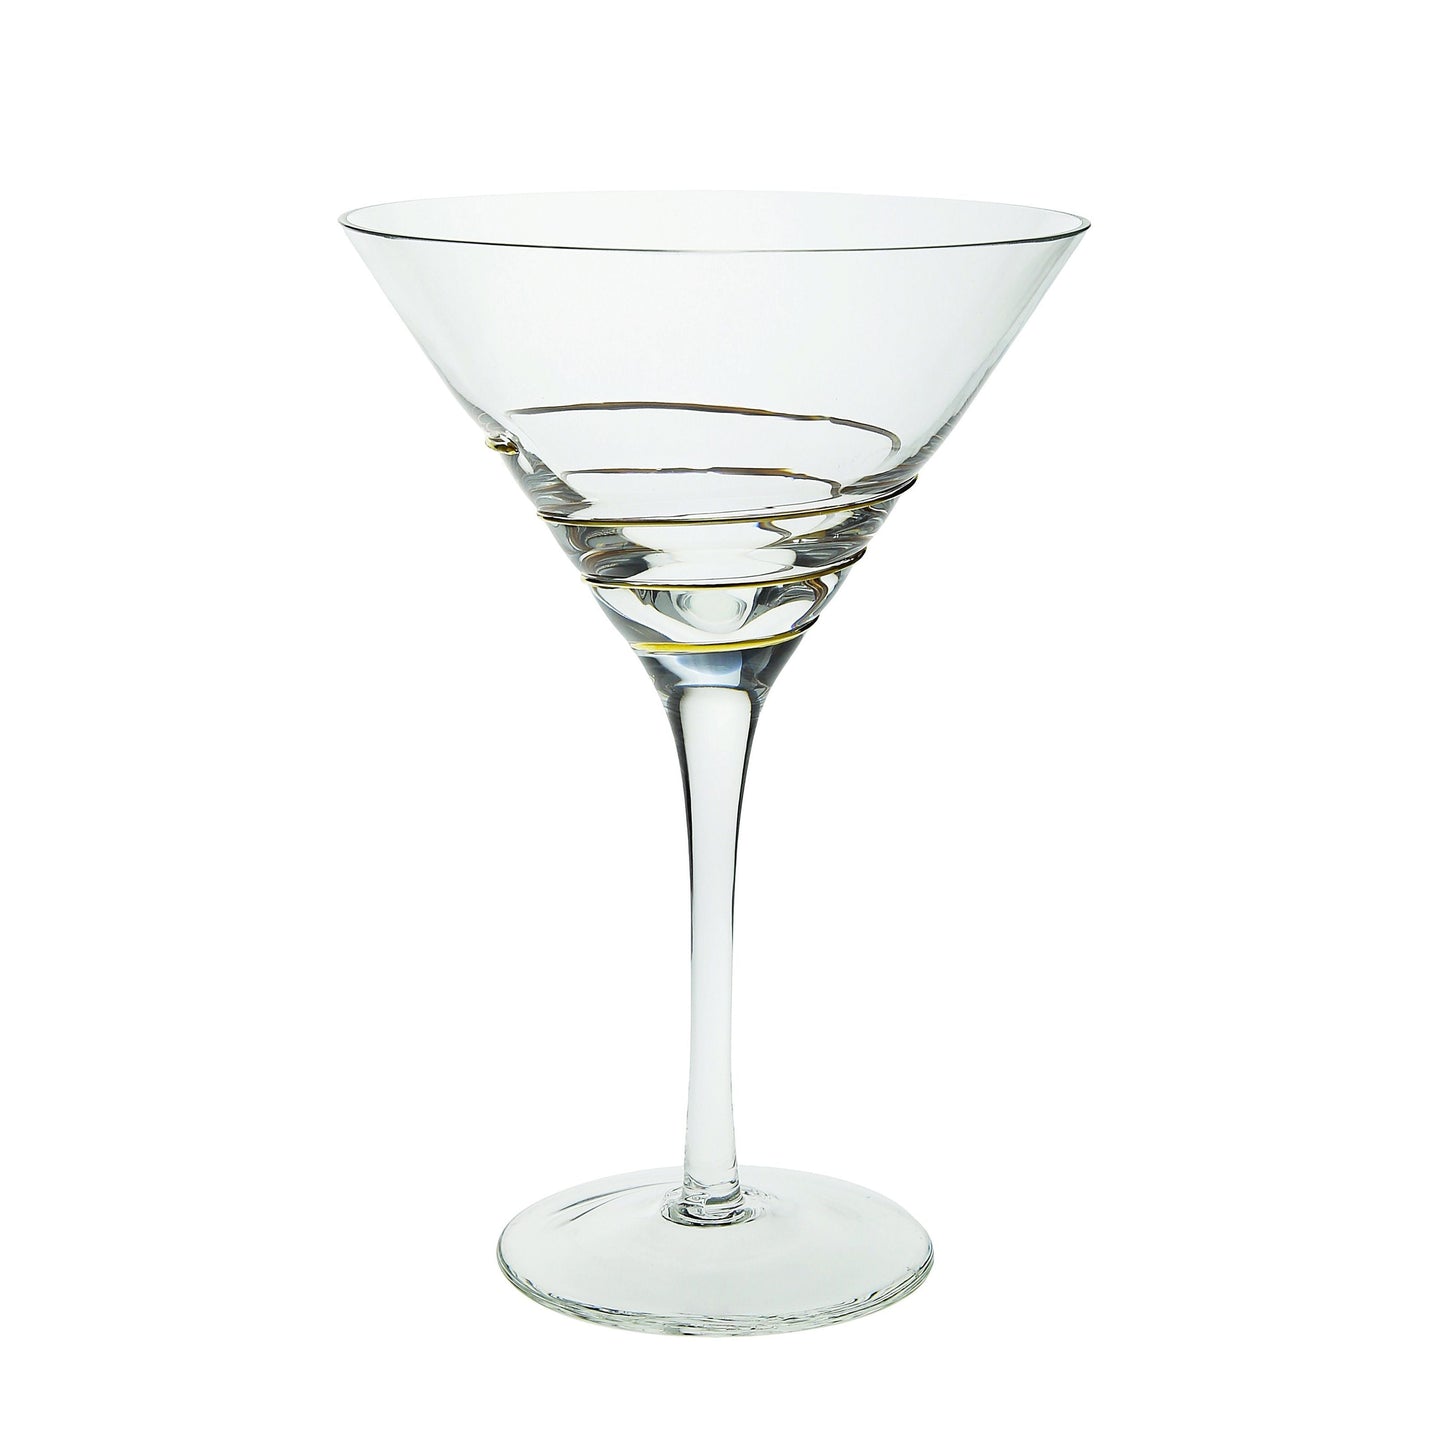 Classic Touch Decor 4 Martini Glasses With Gold Swirl Design, 8"